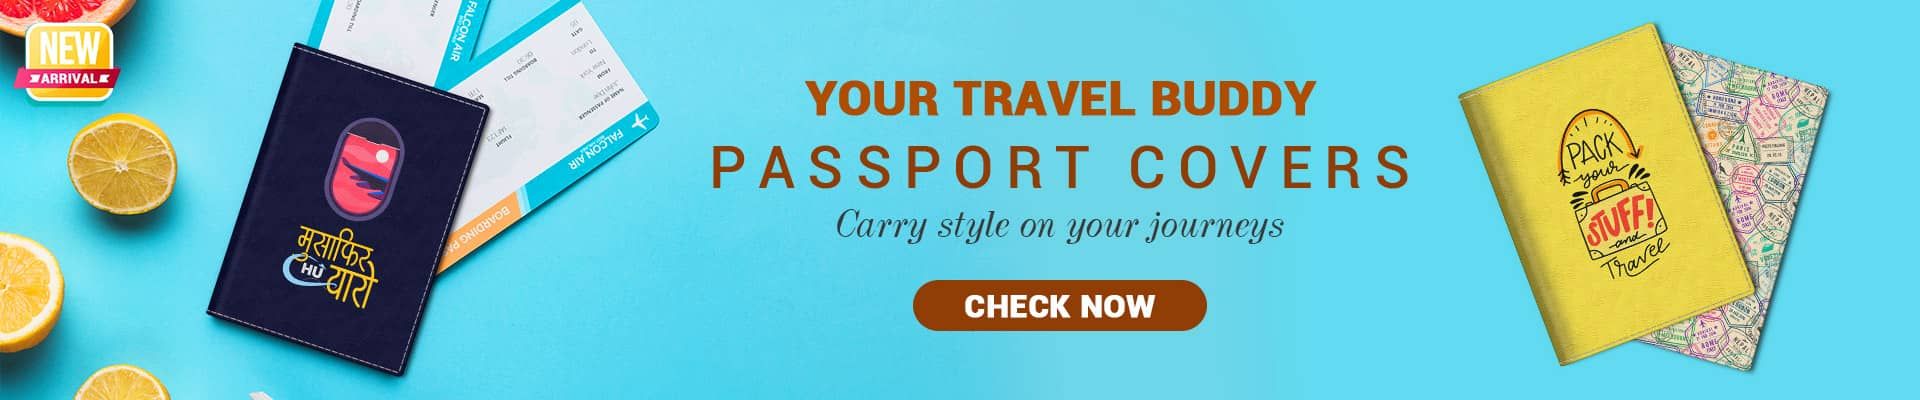 Travel Buddy - Passport Covers 